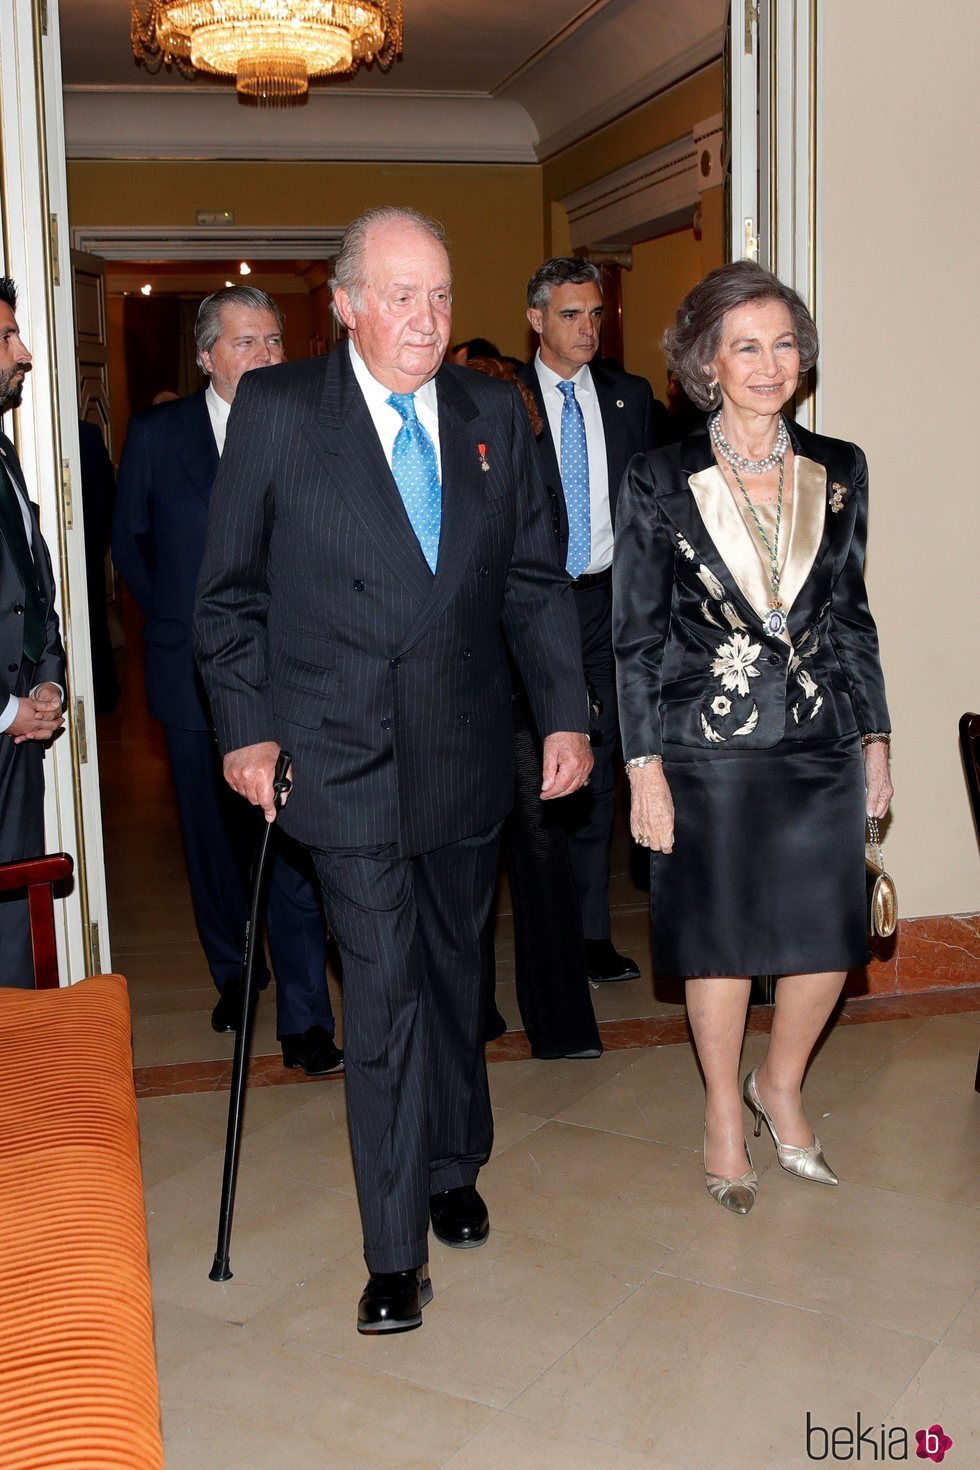 Los Reyes Juan Carlos y Sofía en el acto académico con motivo del 80 aniversario del Rey Juan Carlos